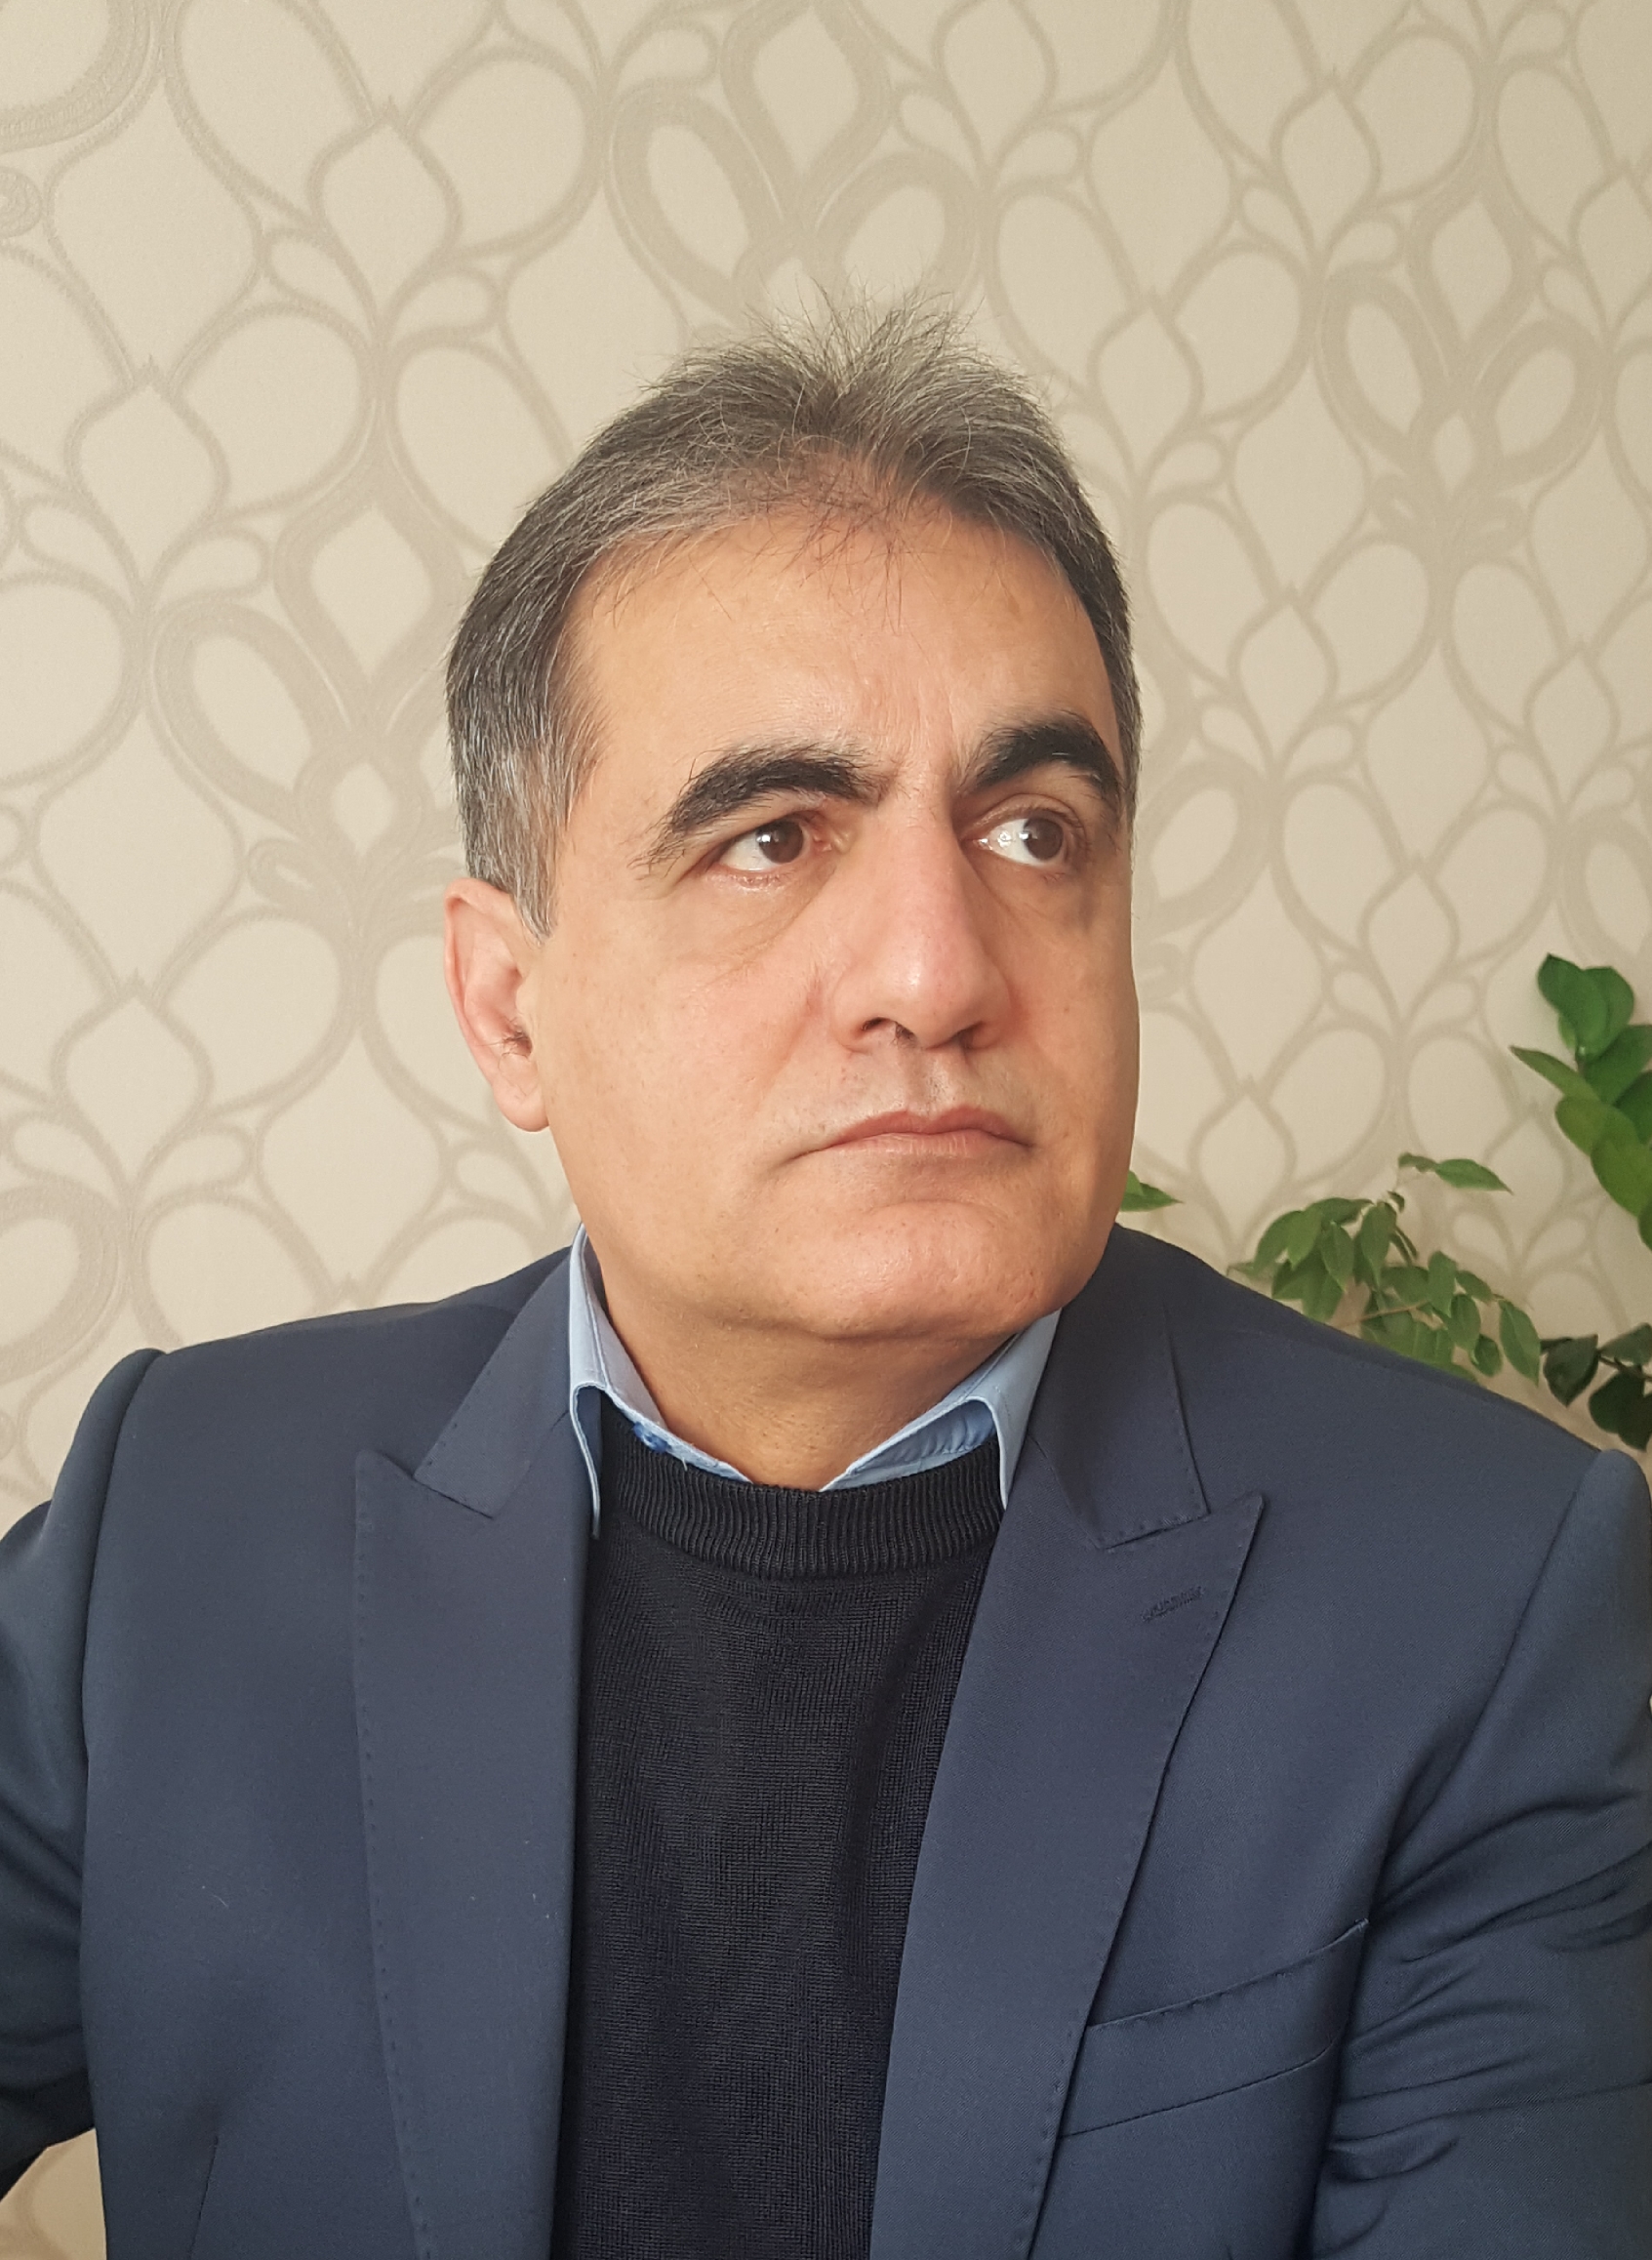 پیش بینی بازار مسکن در گفتگوی رادیو تجارت با دکتر منصور غیبی